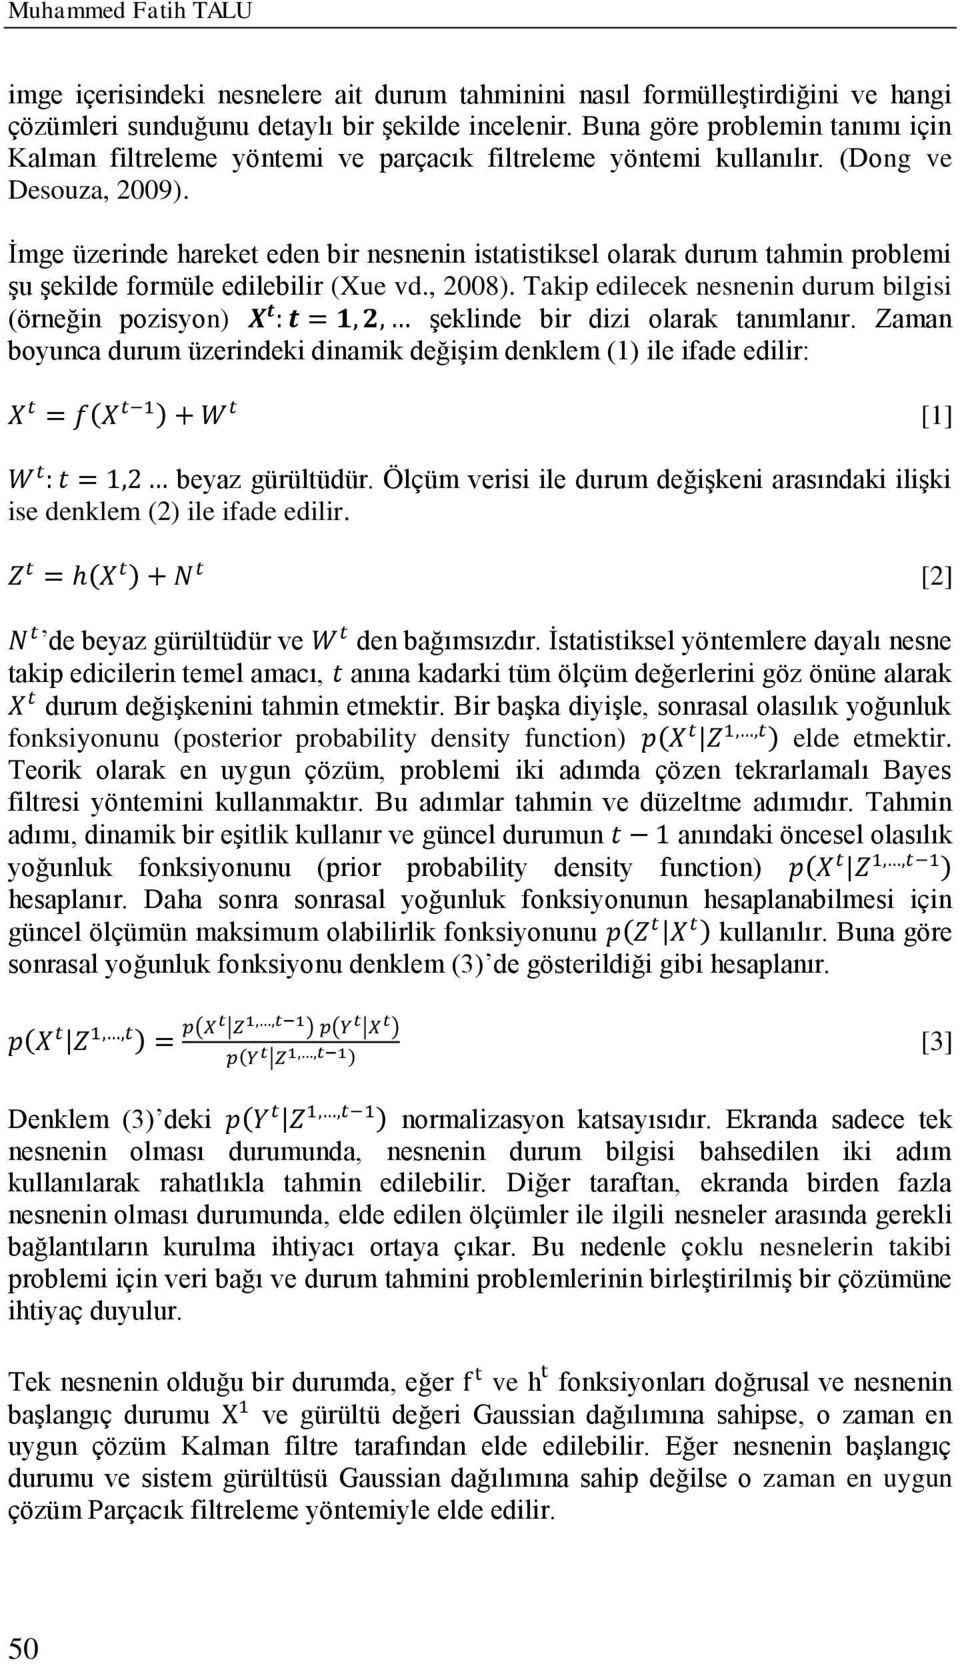 İmge üzerinde hareket eden bir nesnenin istatistiksel olarak durum tahmin problemi şu şekilde formüle edilebilir (Xue vd., 2008).